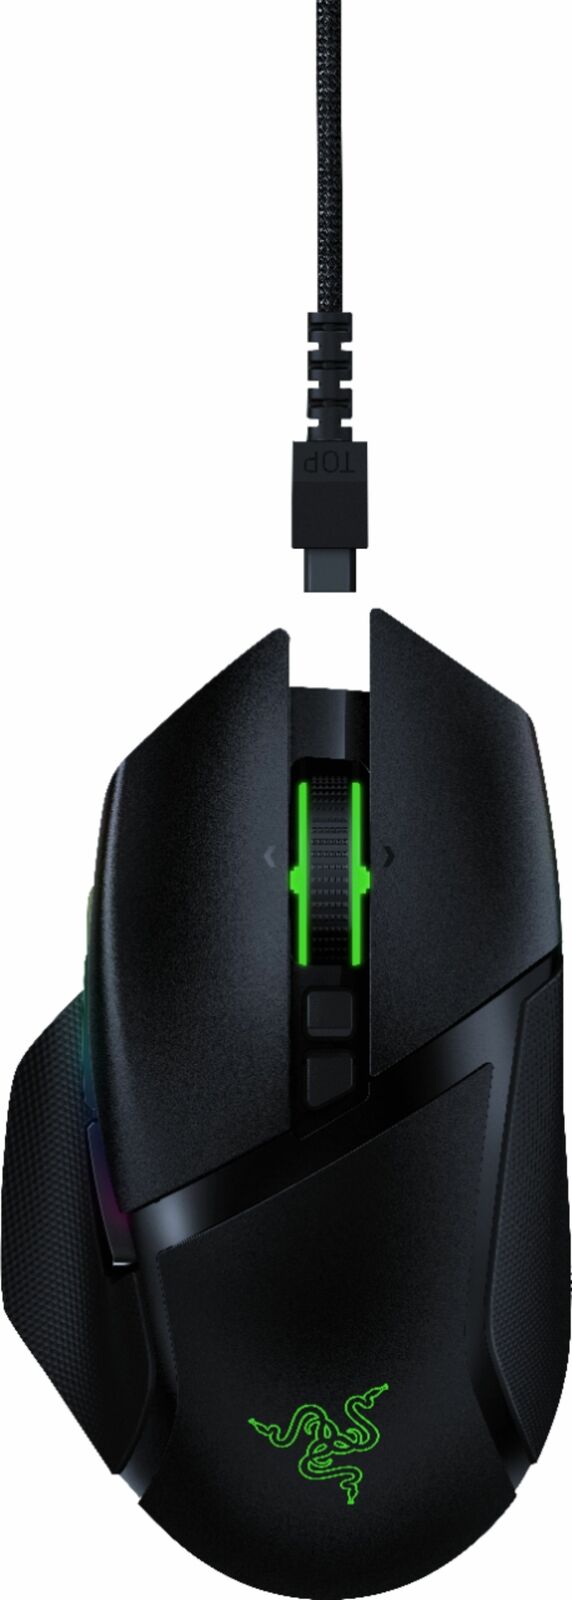 Razer Basilisk Ultimate Wireless Optical Gaming Mouse - Black with 